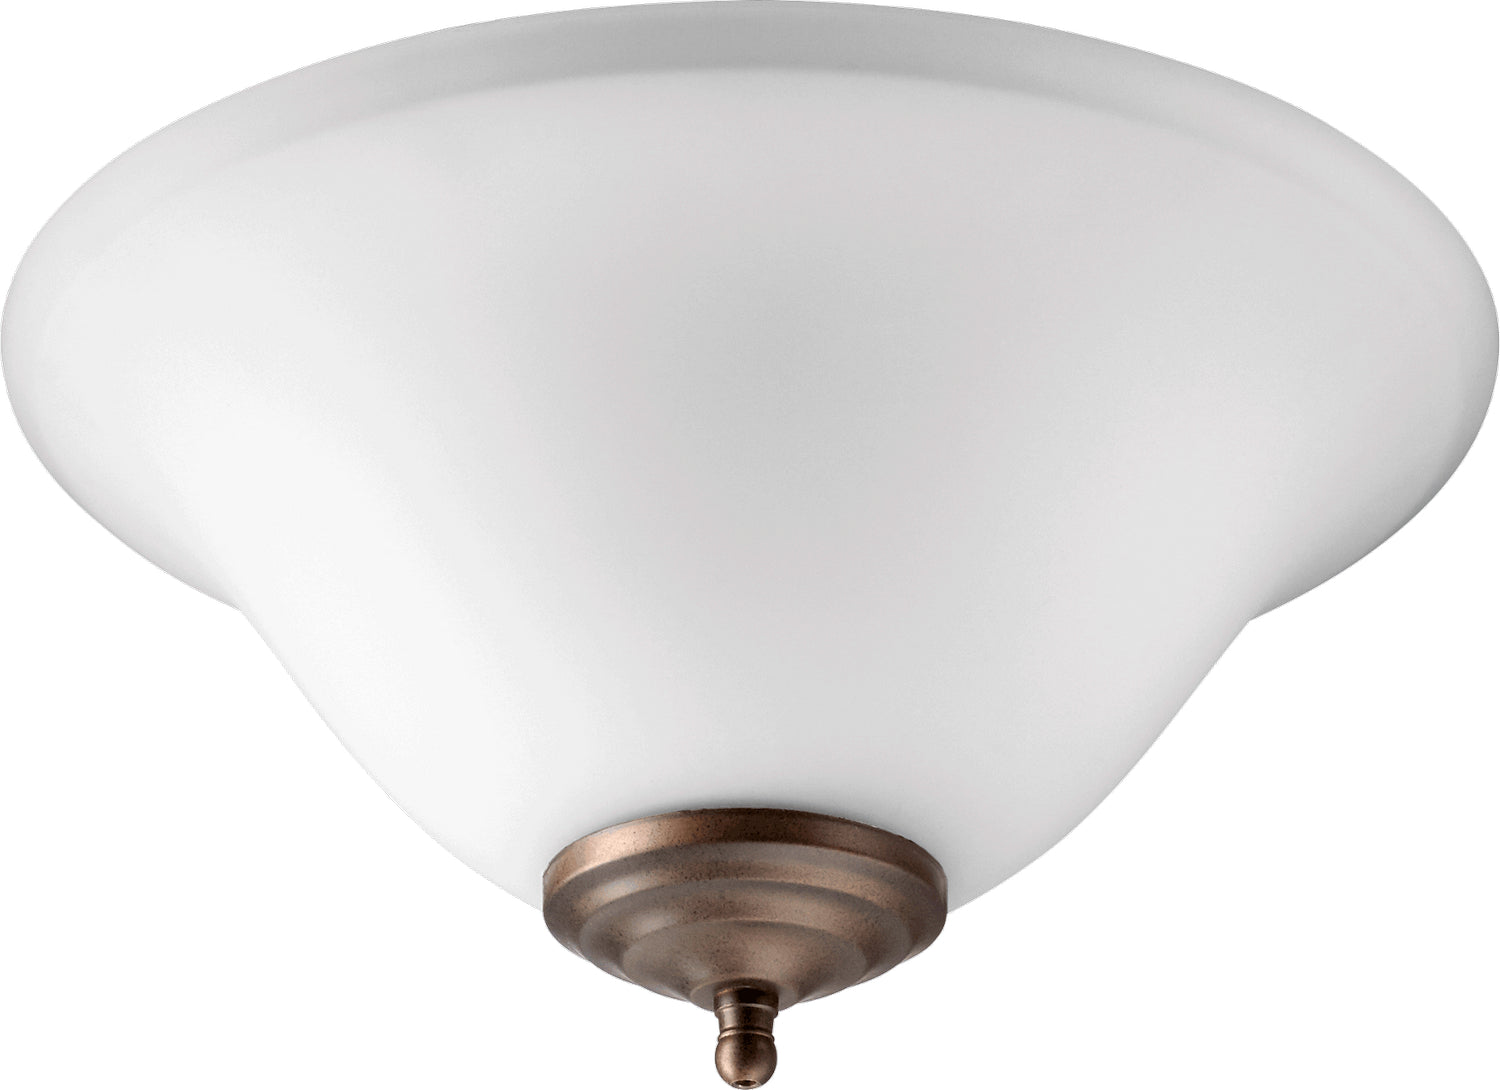 Quorum - 1177-801 - LED Fan Light Kit - Satin Nickel / Oiled Bronze